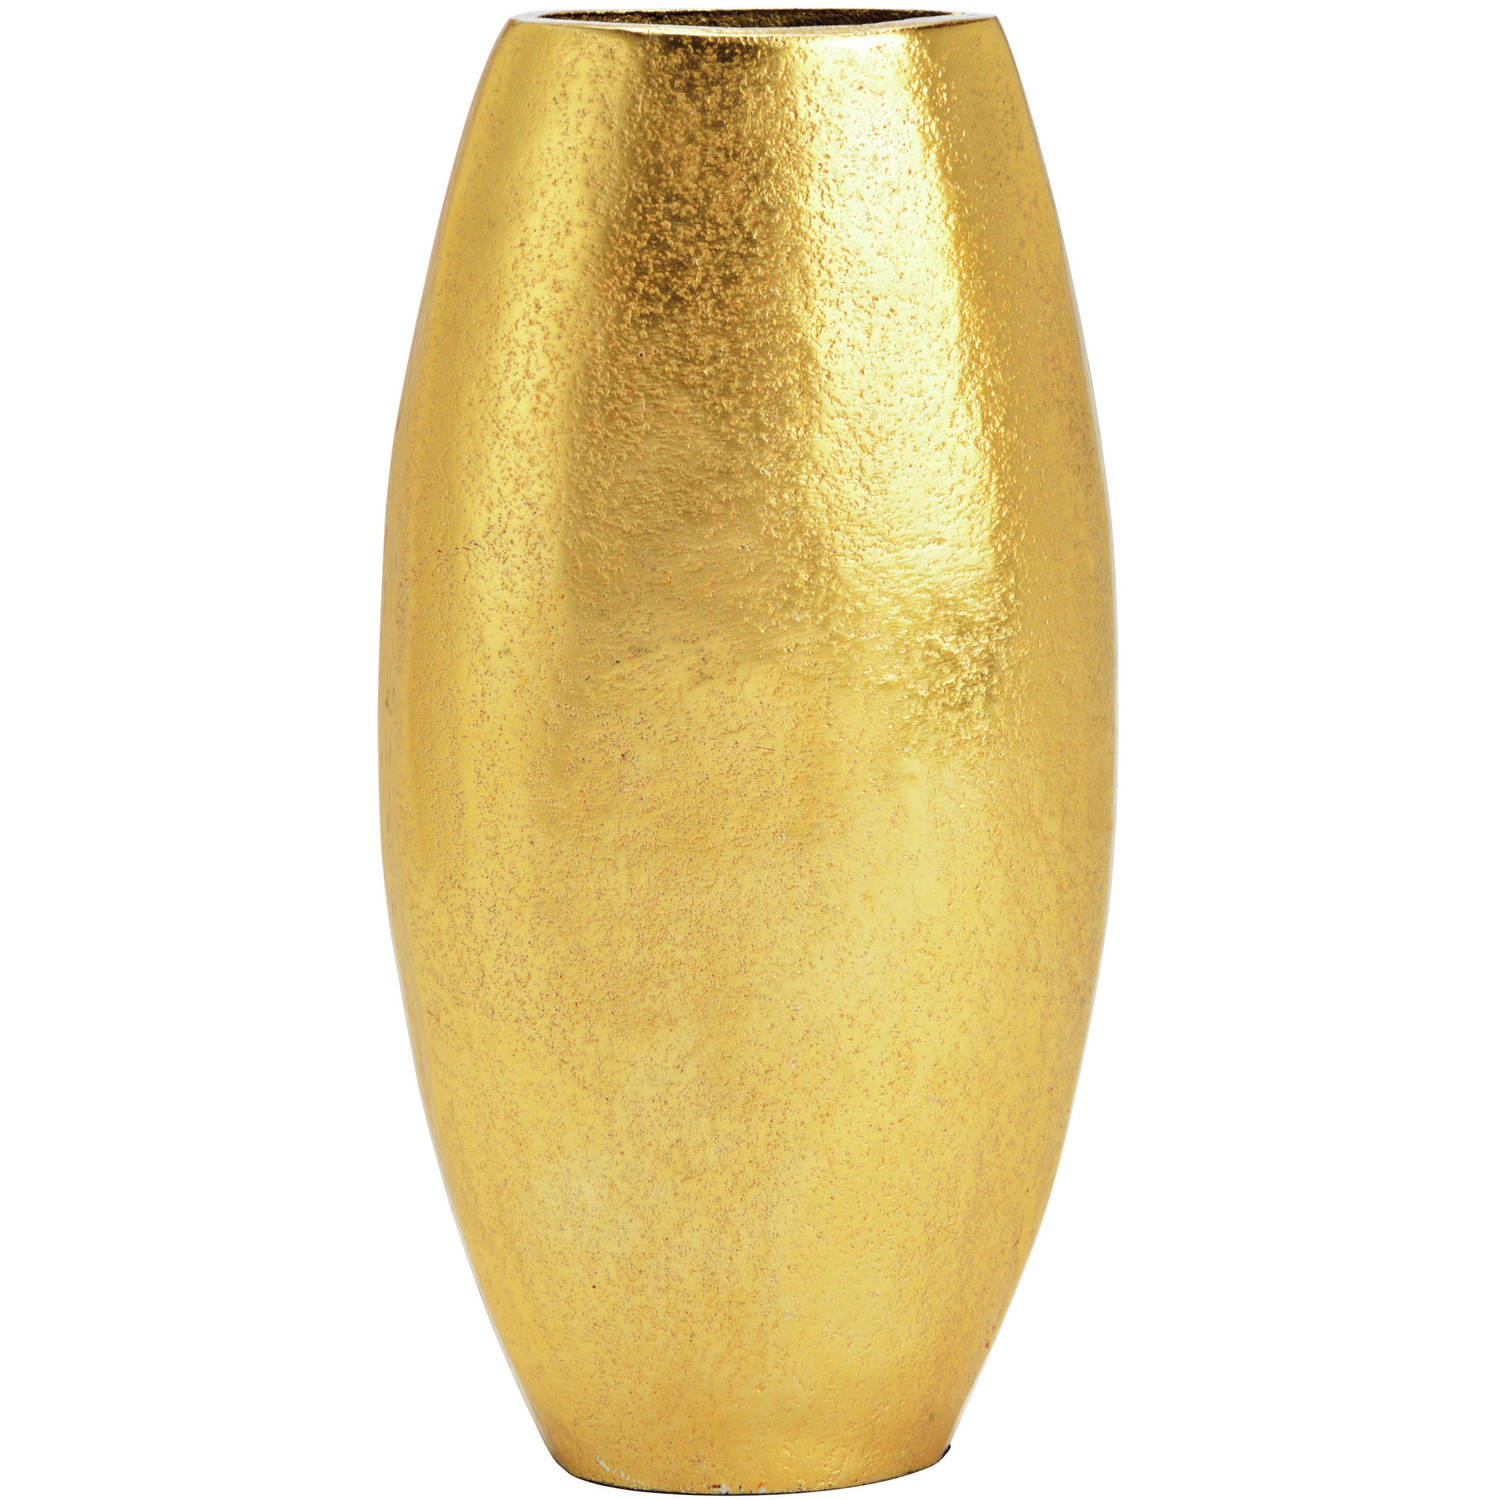 Metalen bloemenvaas goud Monaco de luxe D11 x H22 cm Vazen